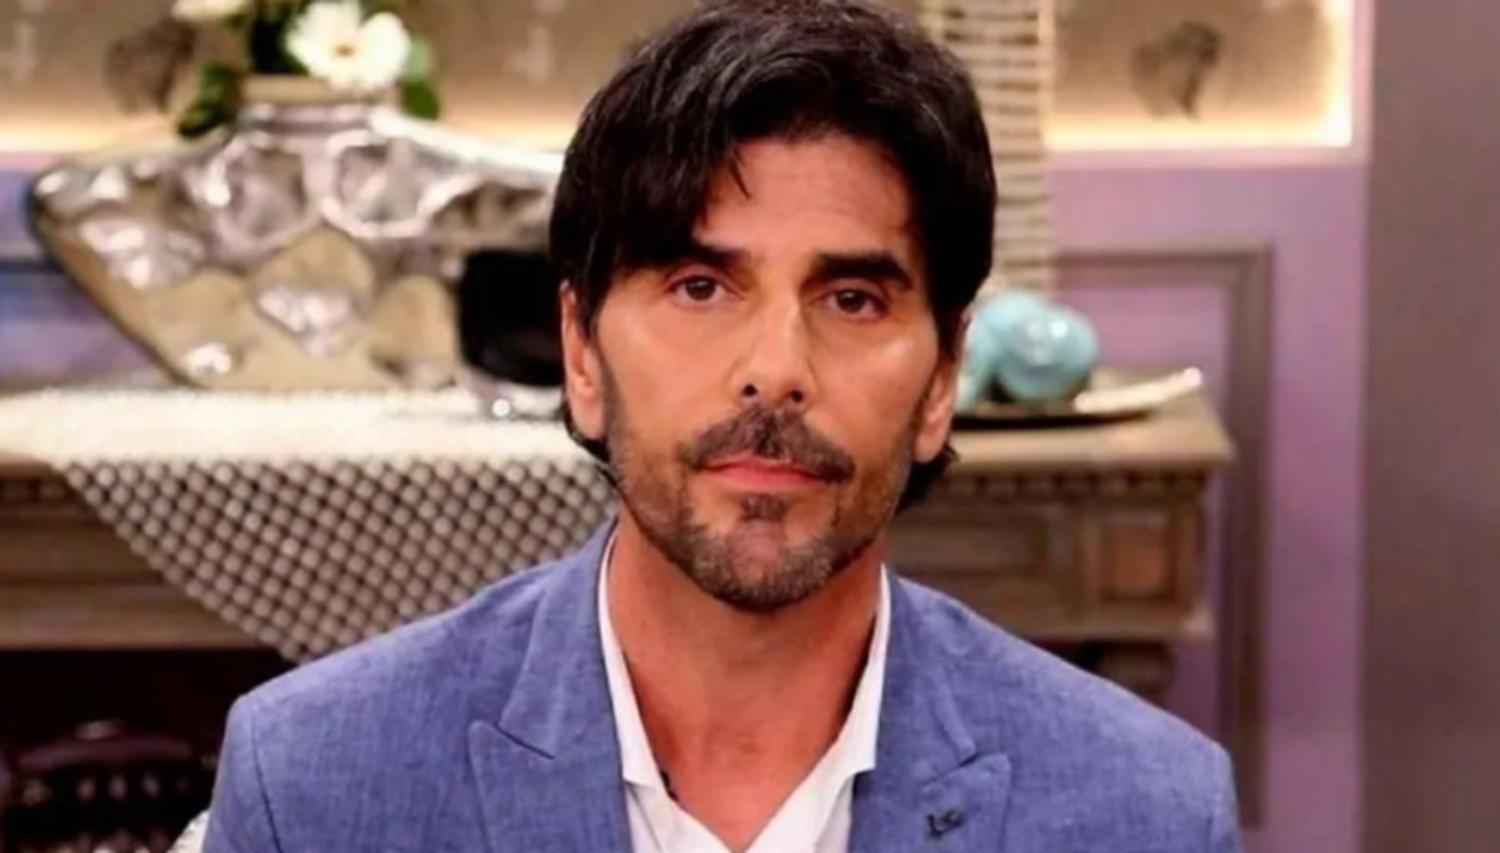 El actor y cantante Juan Dhartés fue condenado a seis años de prisión por la justicia brasileña, tras la denuncia por abuso de la actriz Thelma Fardin.